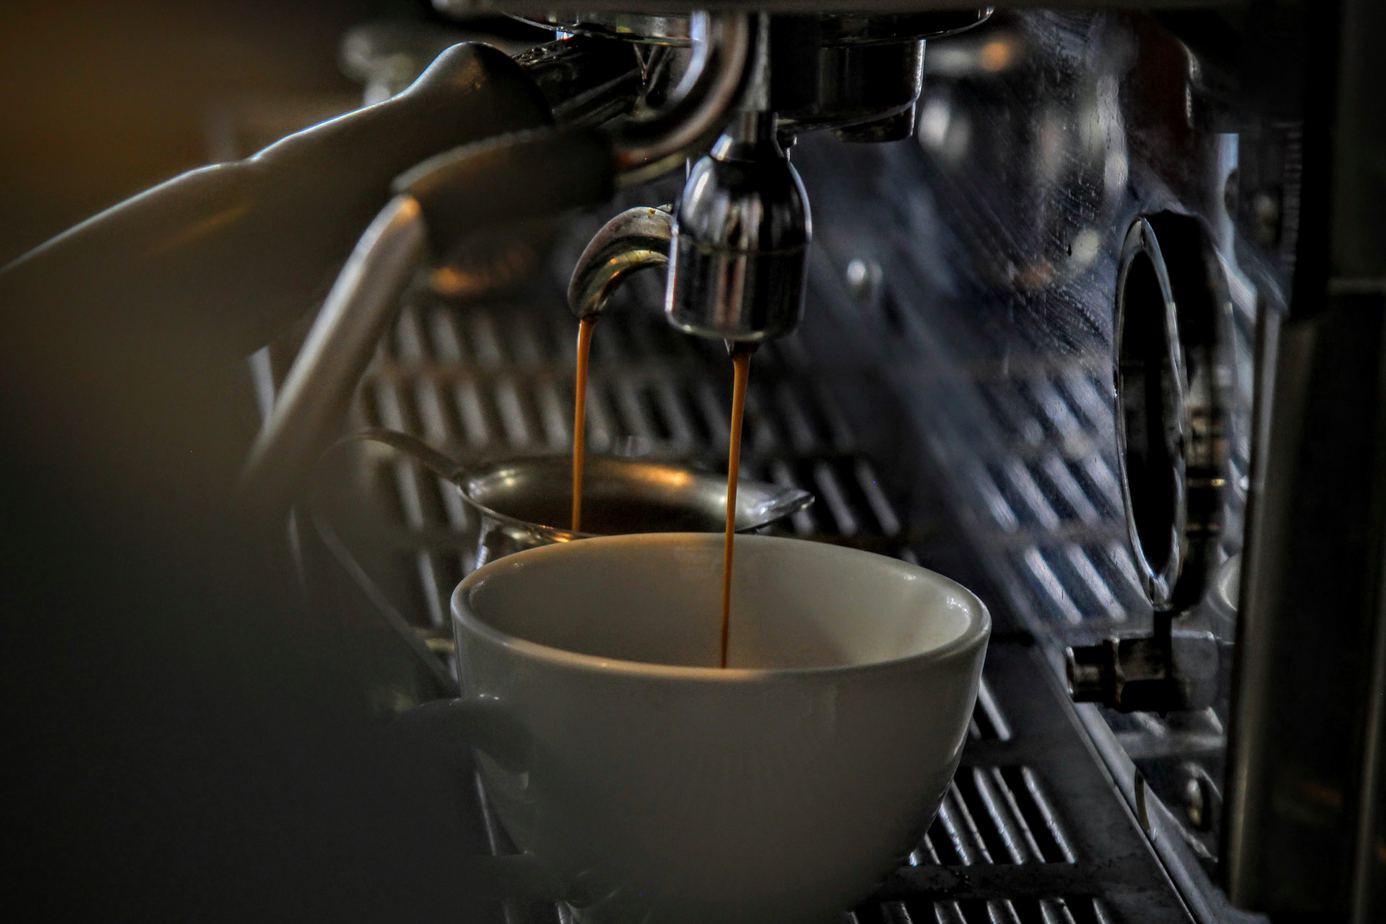 Prensa francesa versus espresso: comparación de dos métodos icónicos de preparación de café